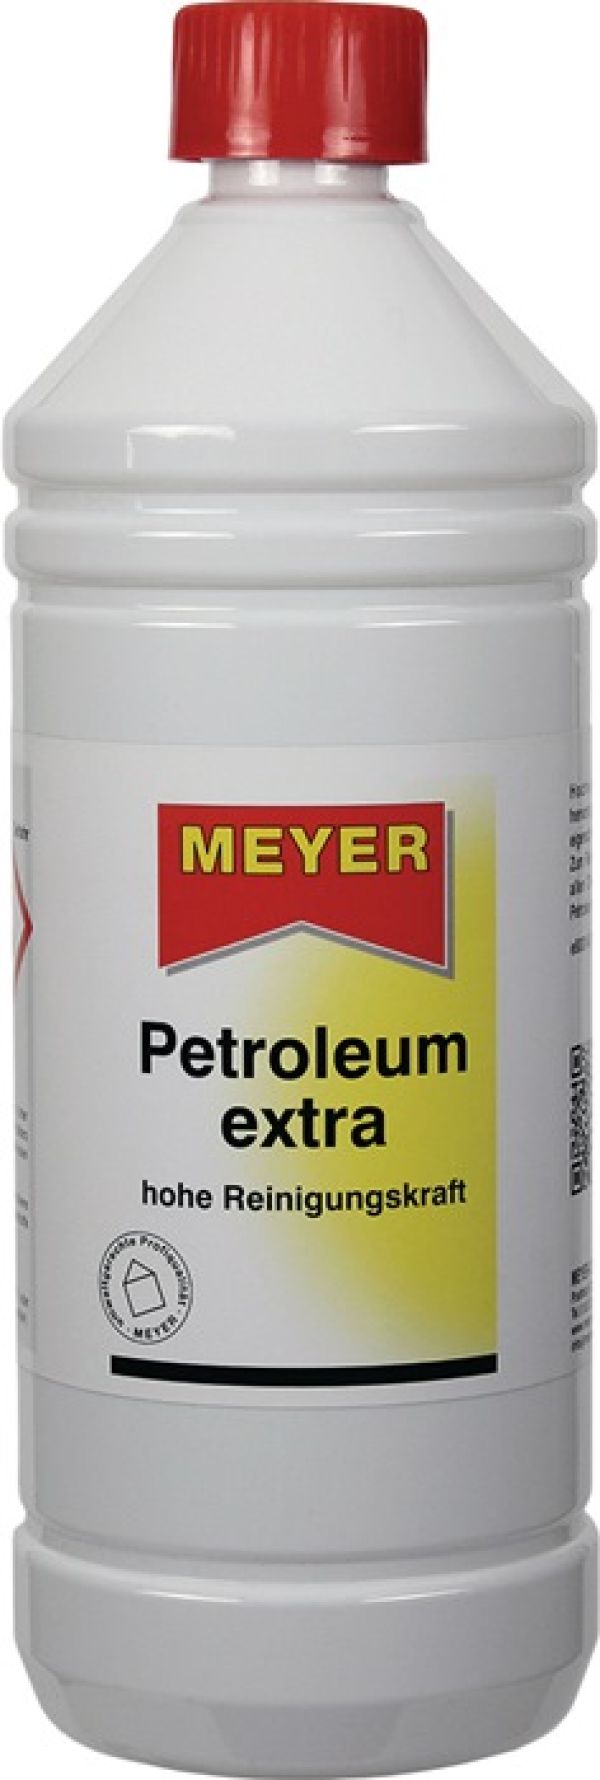 Petroleum 1l Flasche MEYER